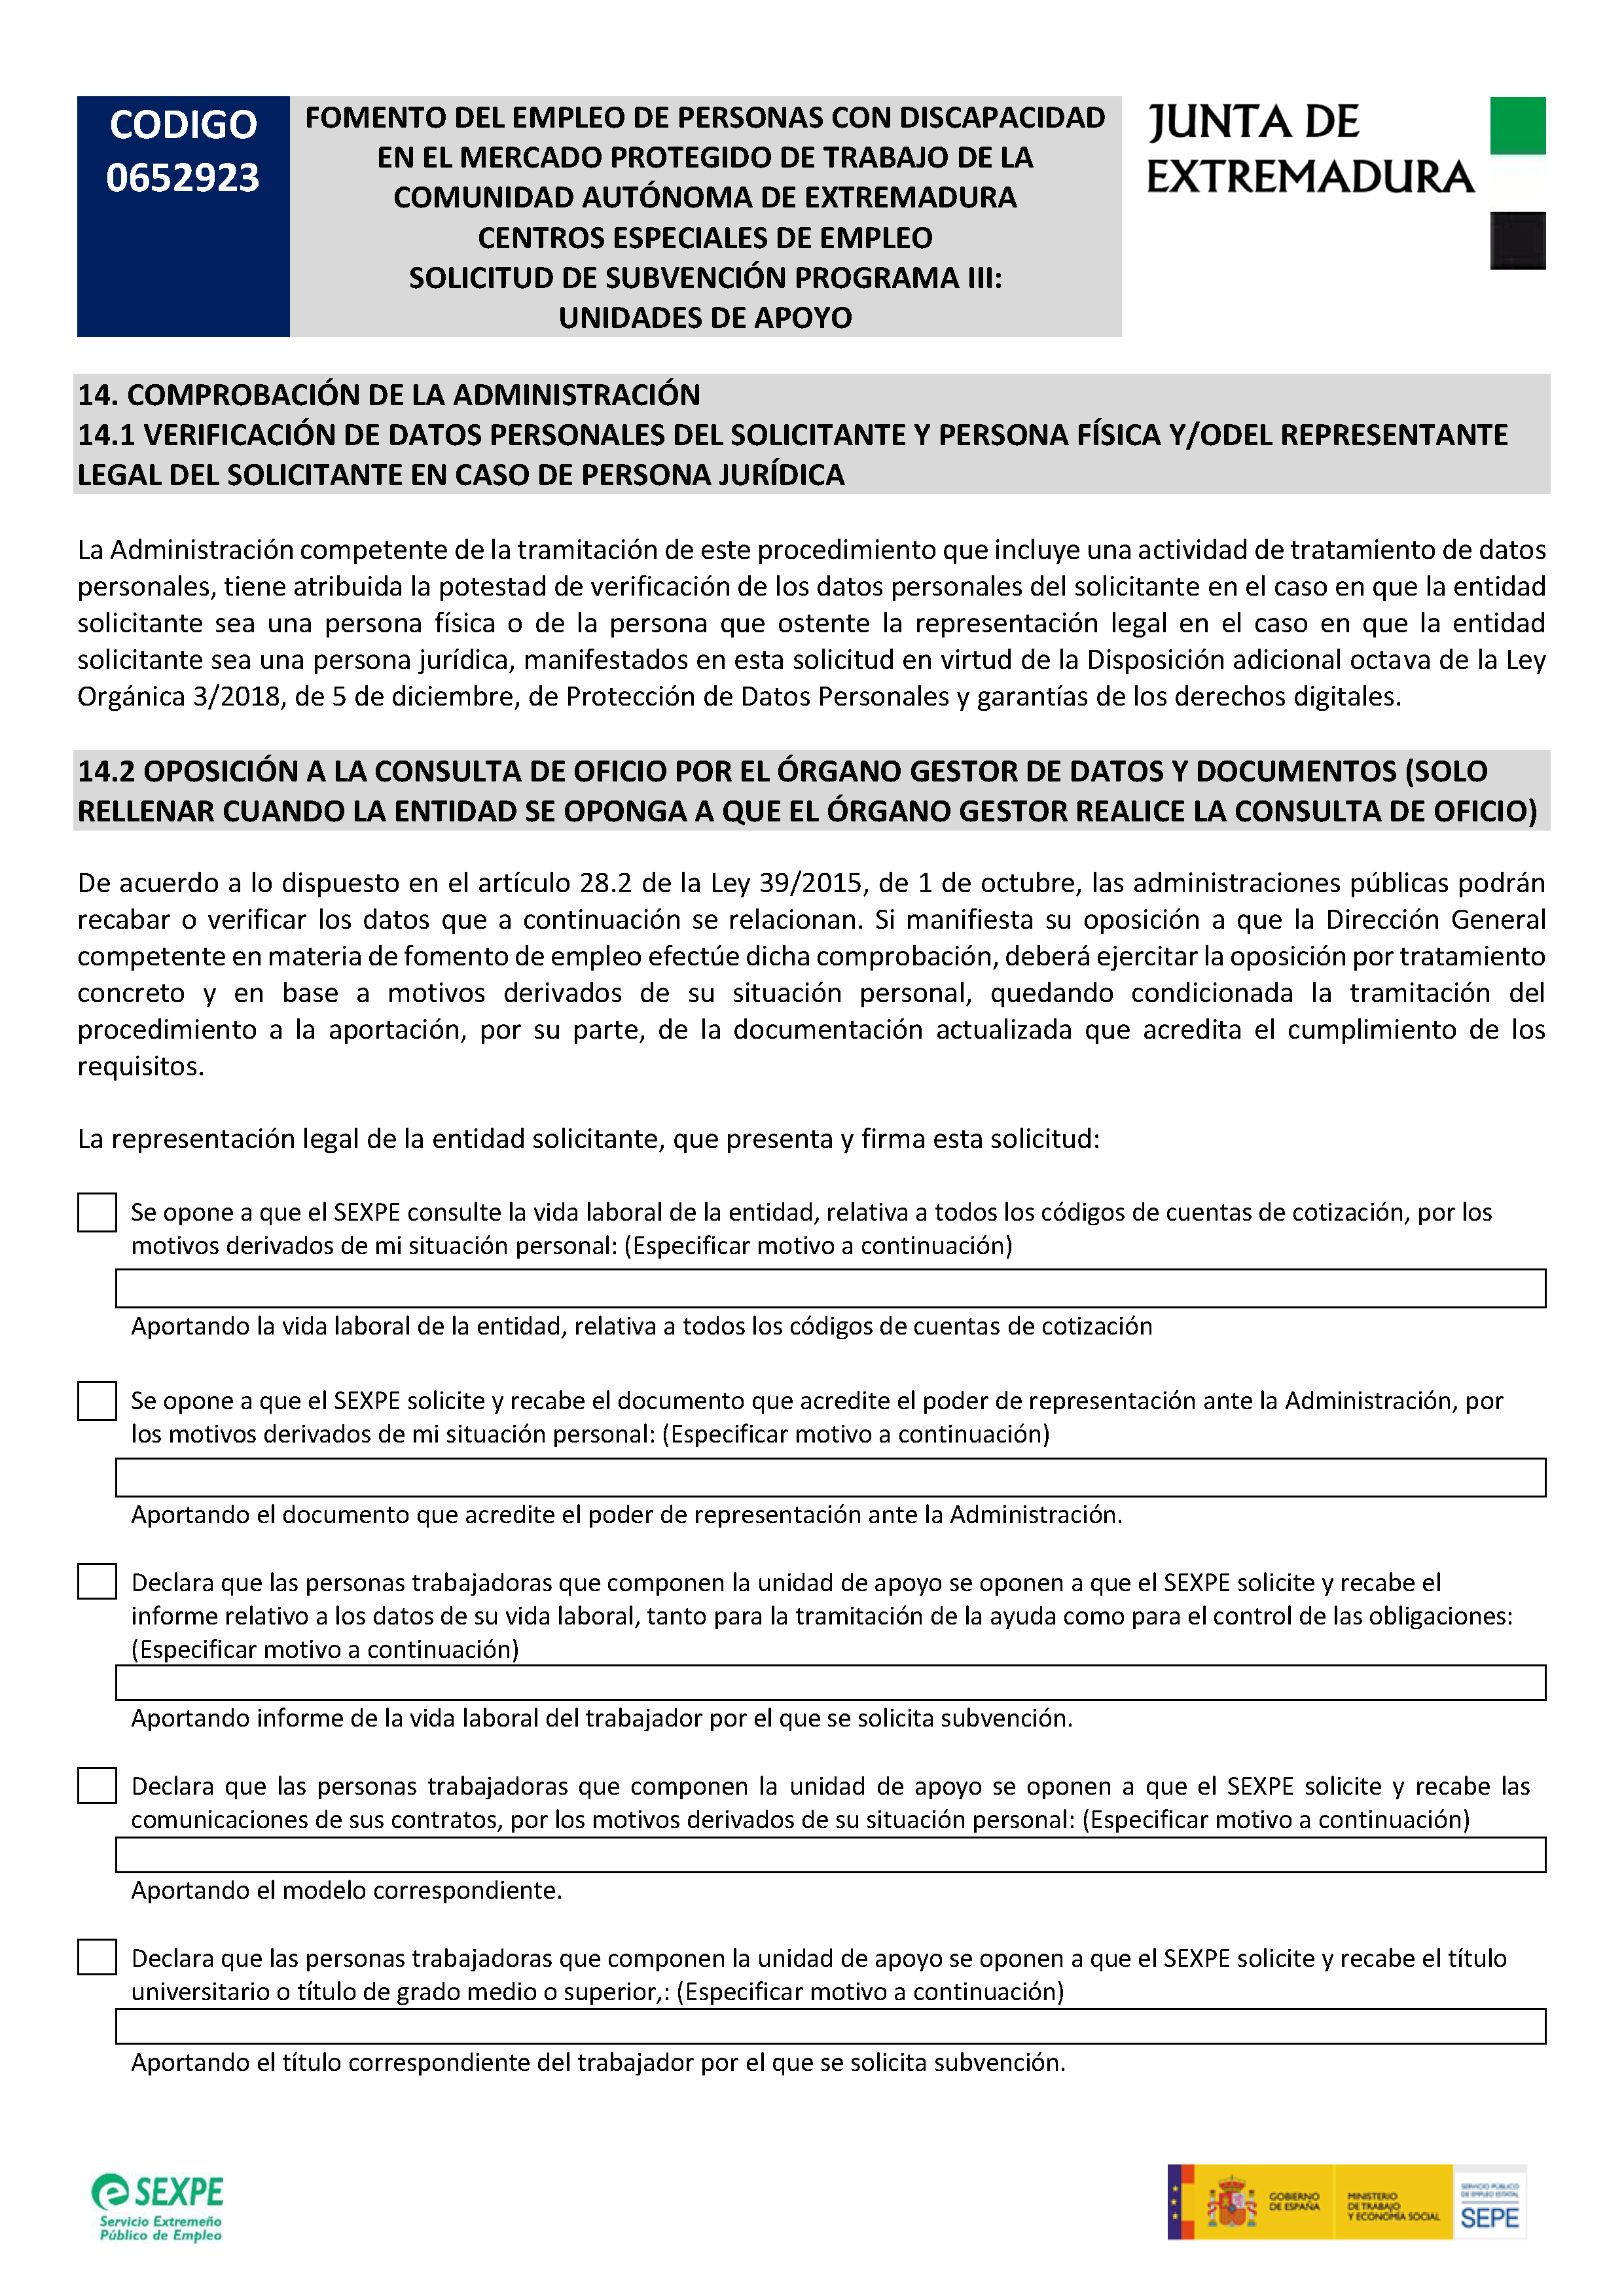 FOMENTO DEL EMPLEO EN PERSONAS CON DISCAPACIDAD III Pag 8